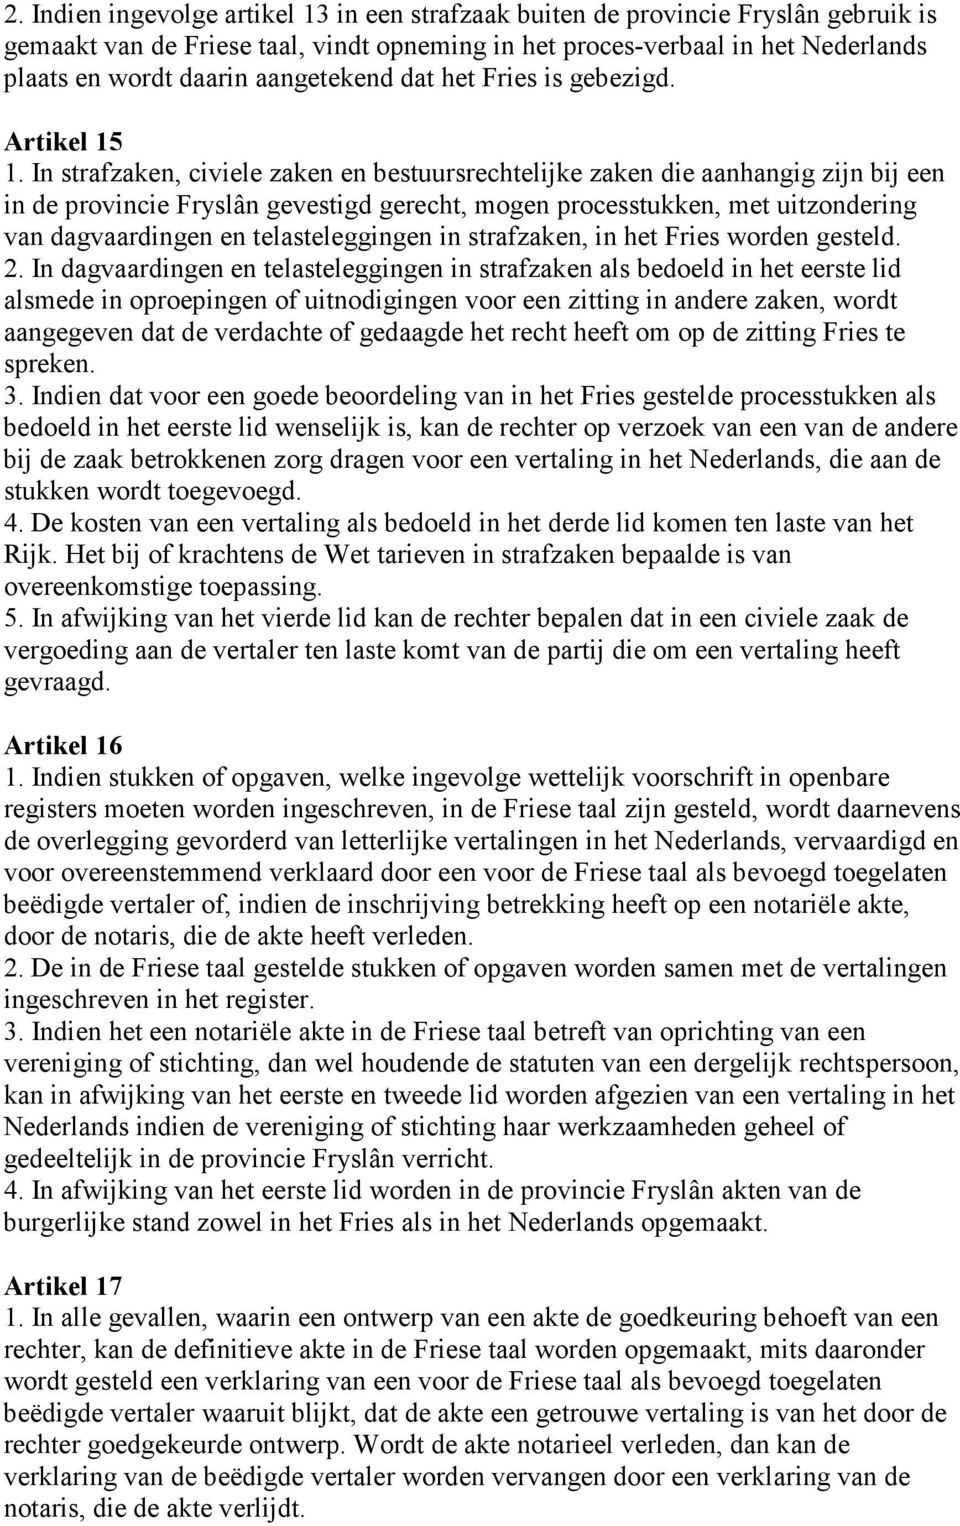 In strafzaken, civiele zaken en bestuursrechtelijke zaken die aanhangig zijn bij een in de provincie Fryslân gevestigd gerecht, mogen processtukken, met uitzondering van dagvaardingen en